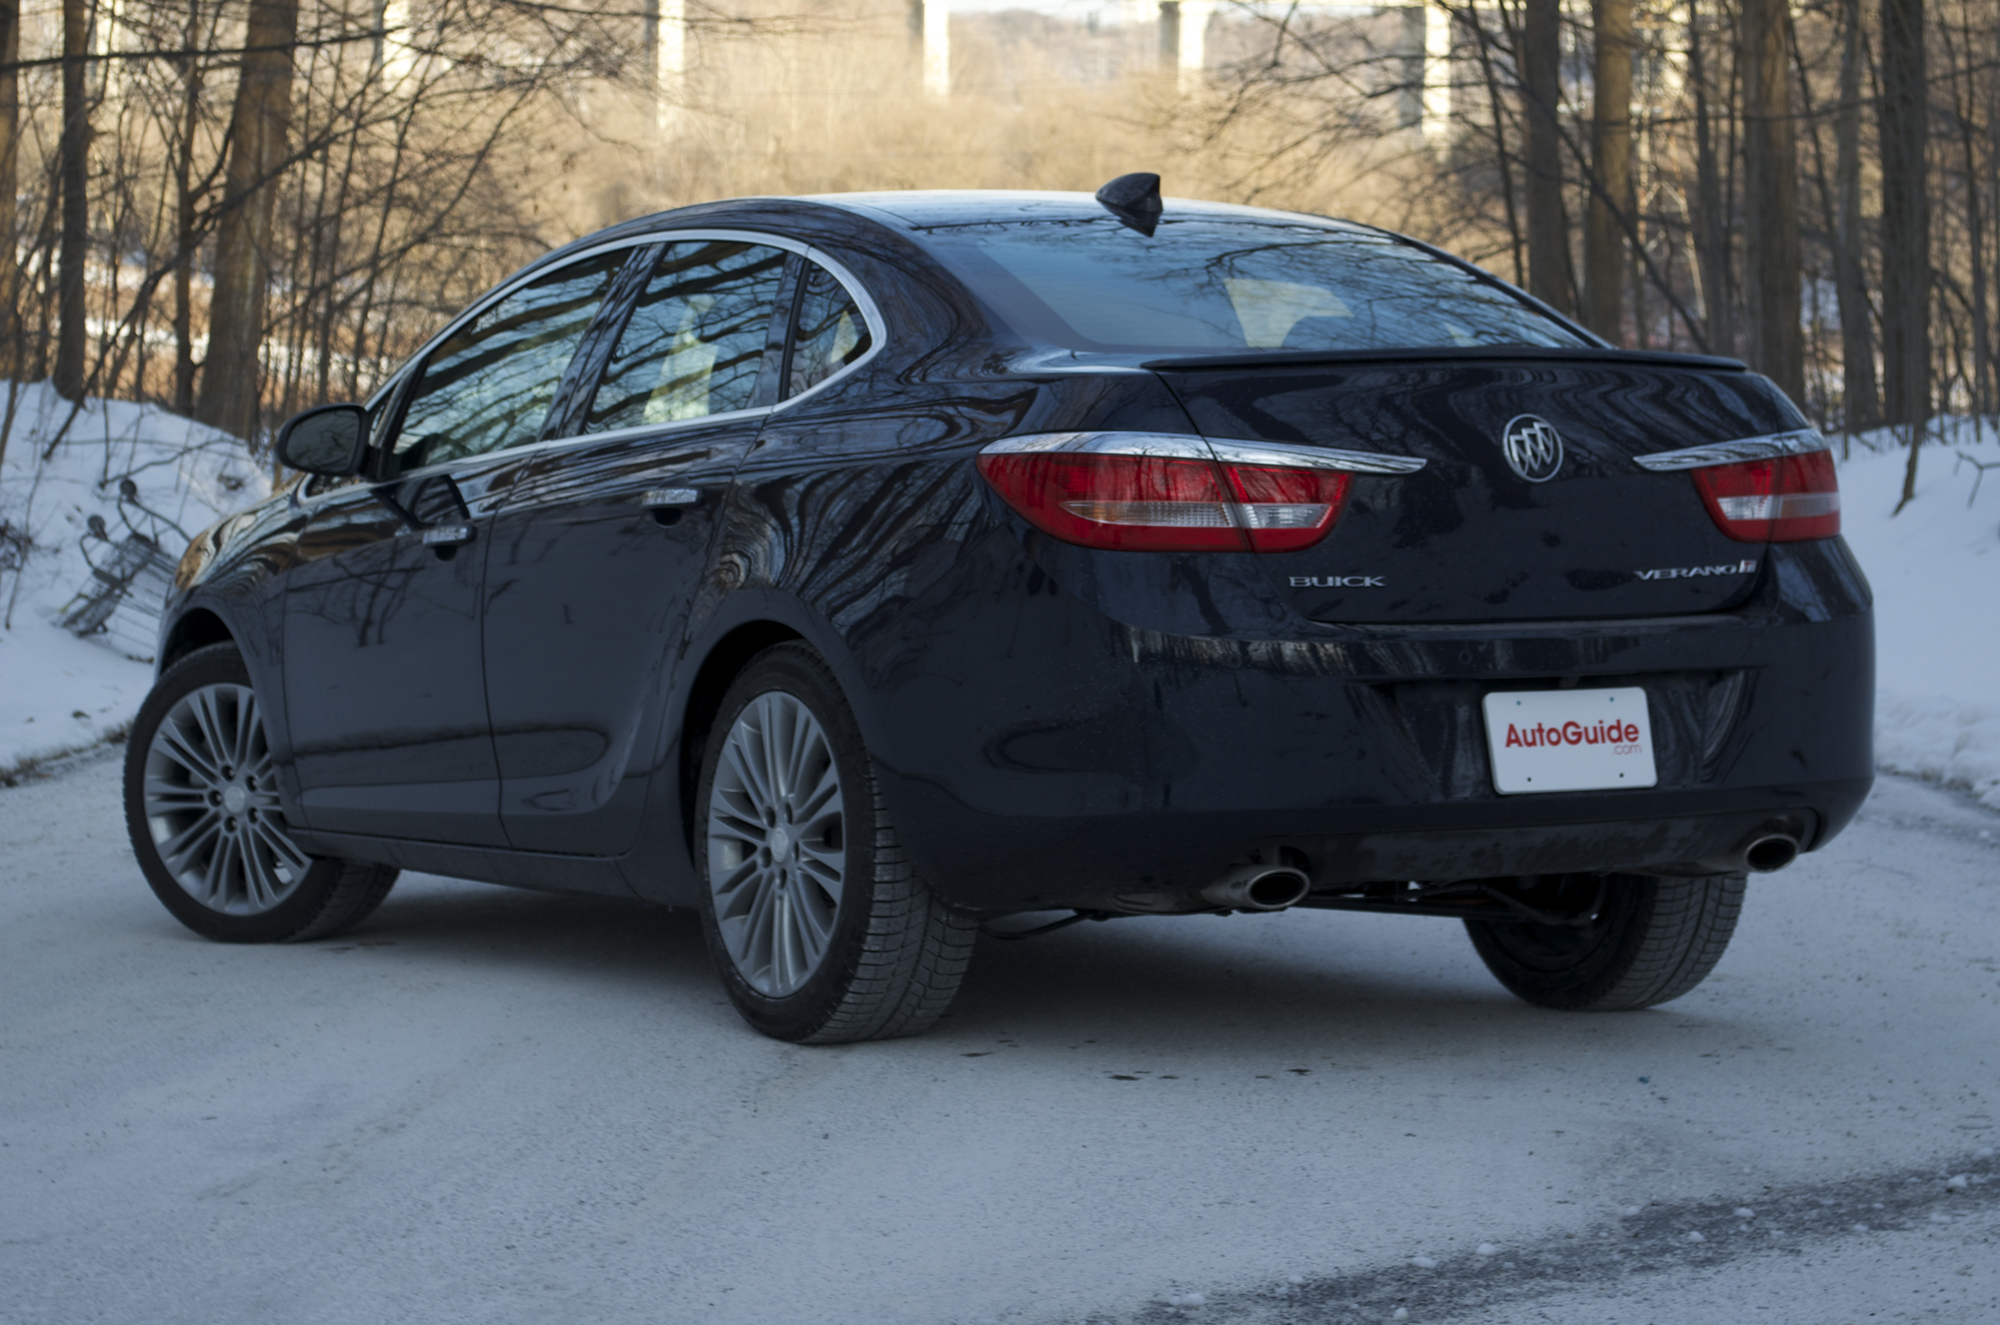 2015 Buick Verano Review - AutoGuide.com